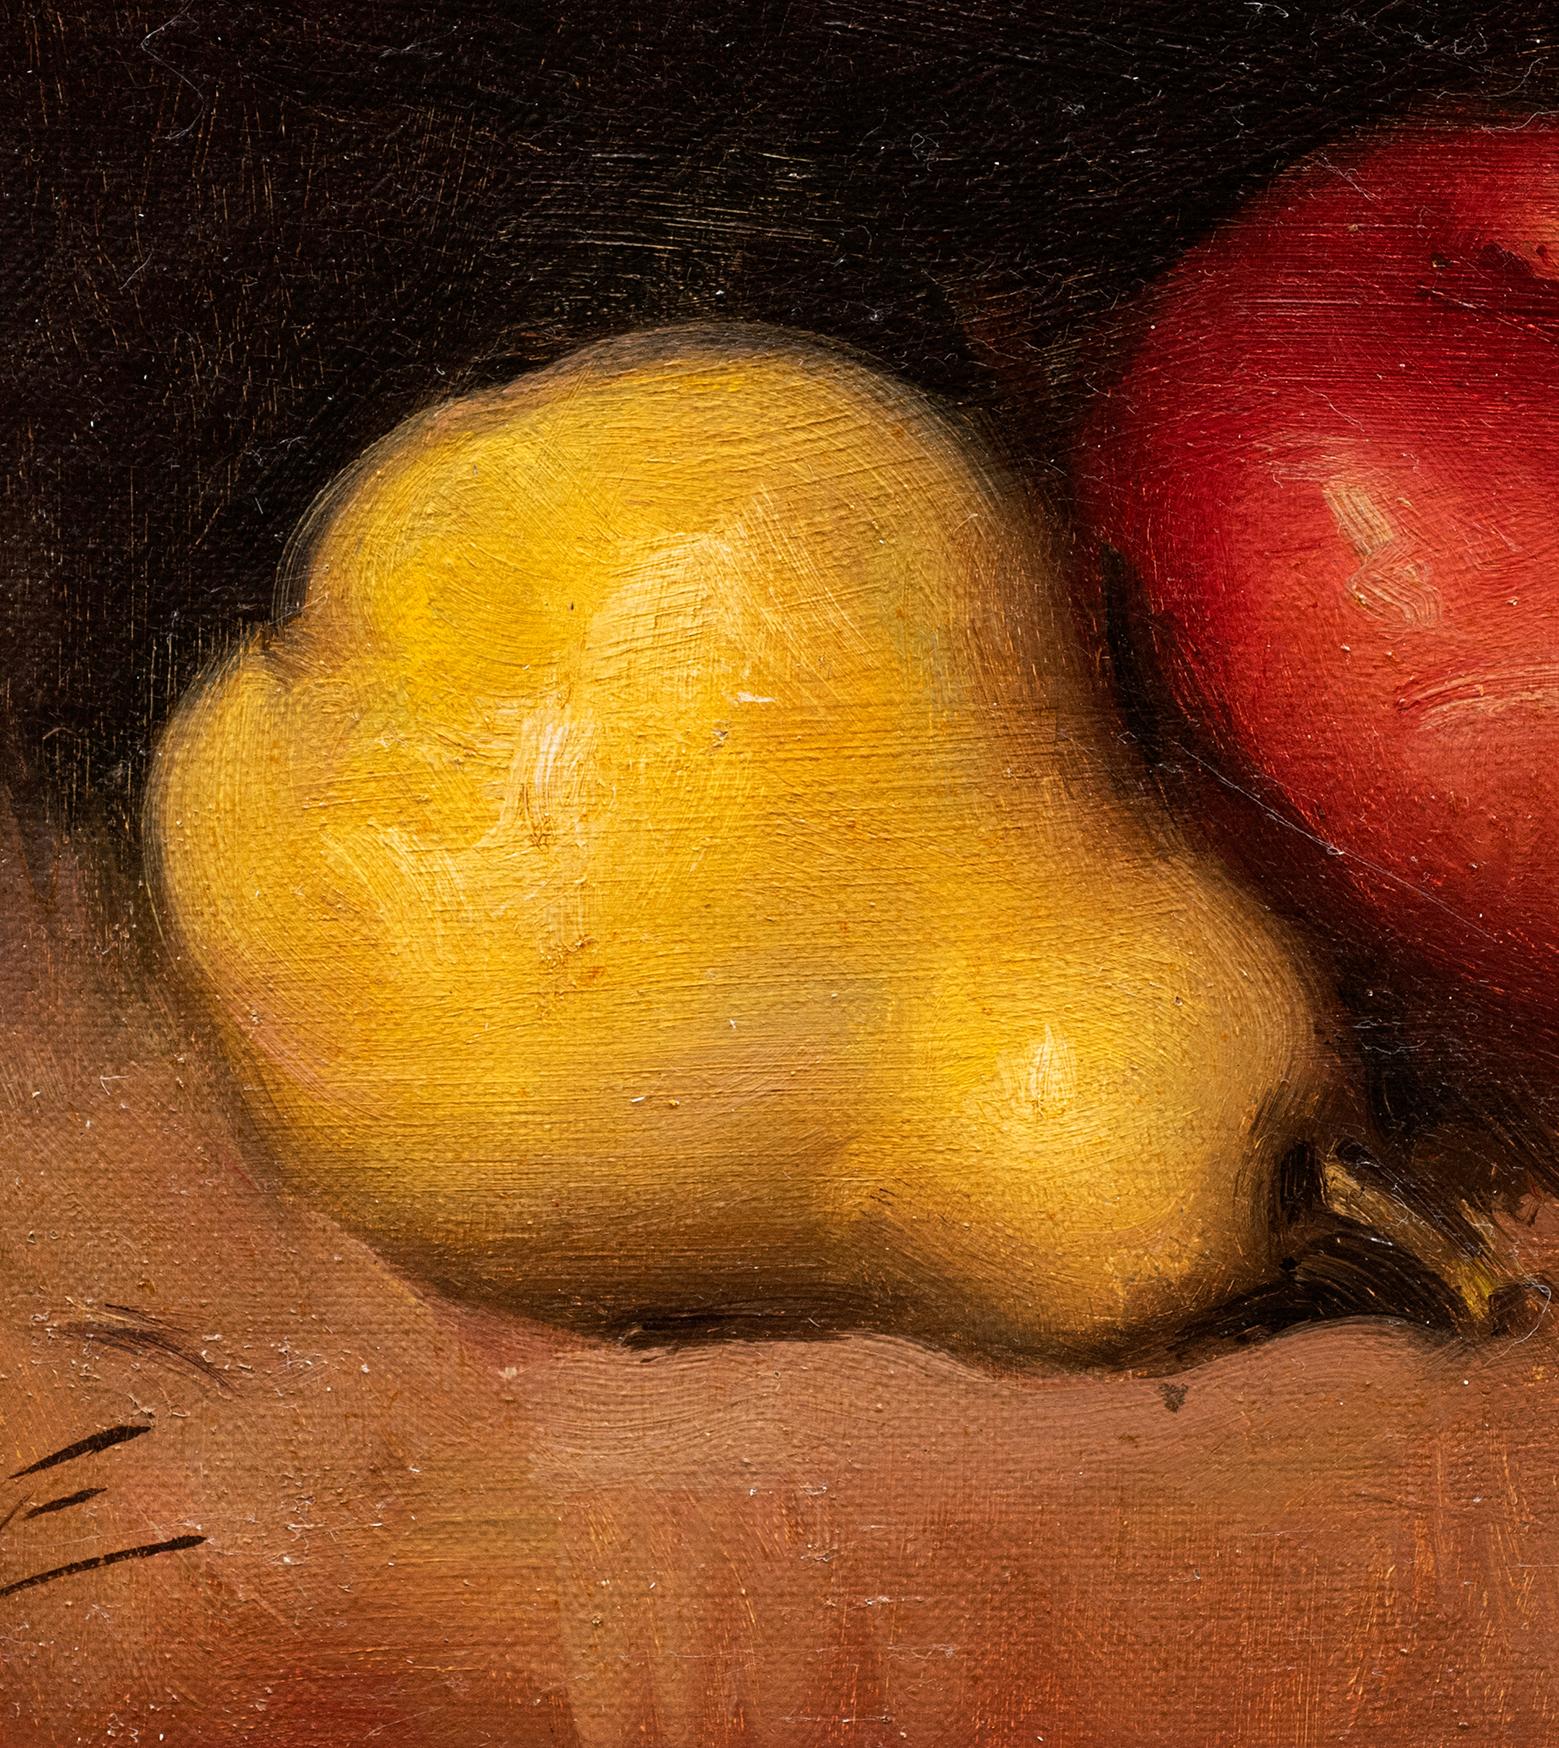 Ein amerikanisches Stillleben mit Apfel, Birne und Trauben 
Öl auf Leinwand auf Karton
Unleserlich unterschrieben
um das späte 19. Jahrhundert 
9 3/4 x 5 7/8 (16 x 12 3/4 Rahmen) Zoll

Dies ist ein Beispiel für die Stilllebenmalerei des späten 19.